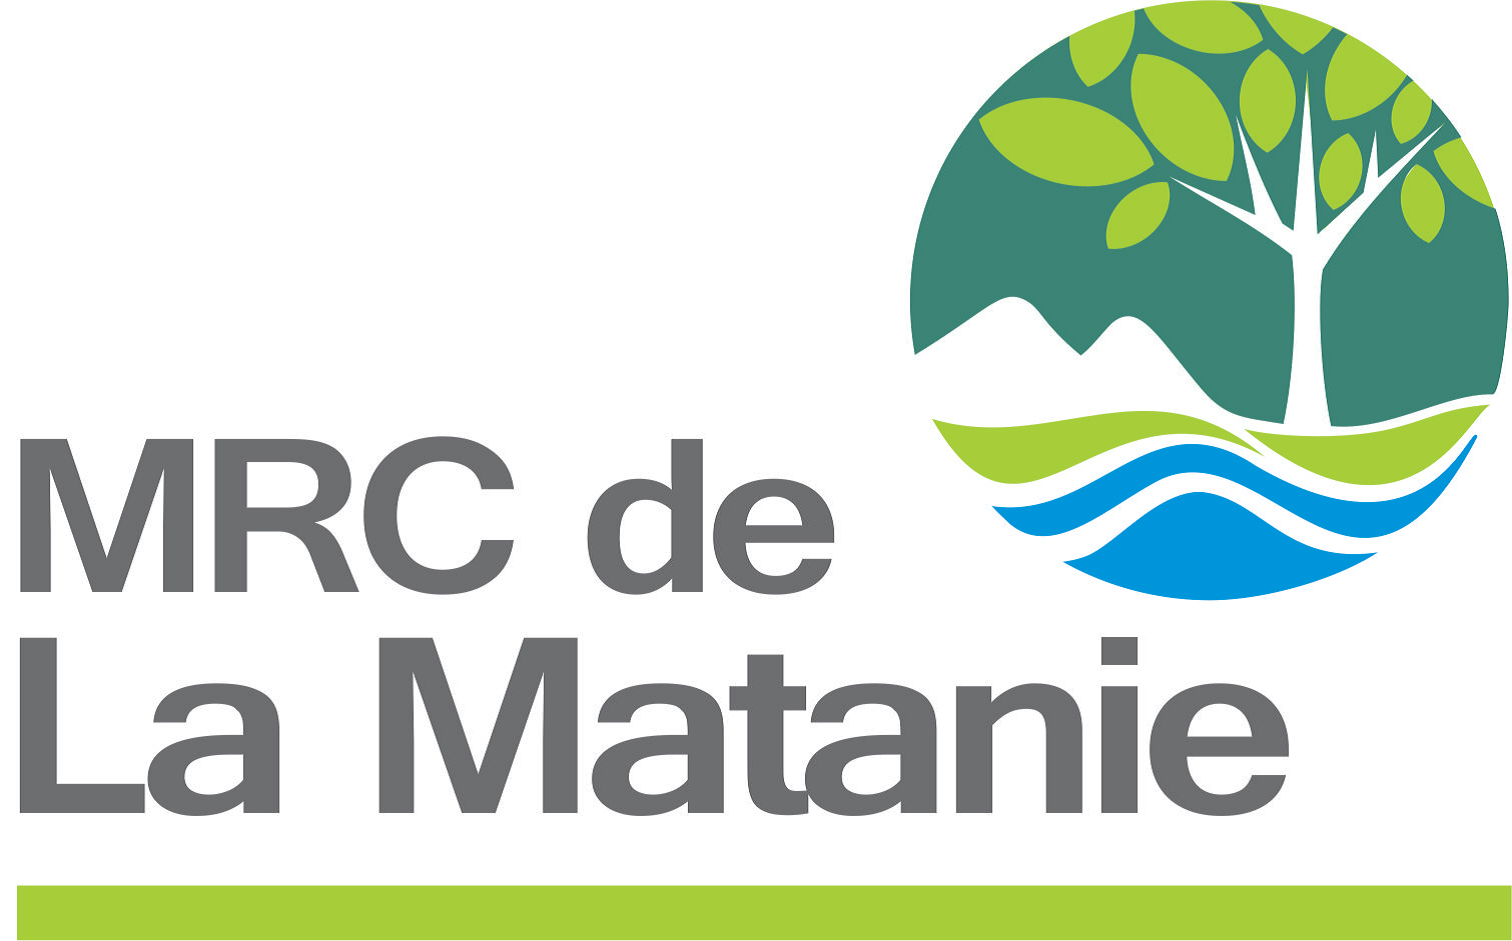 MRC de La Matanie